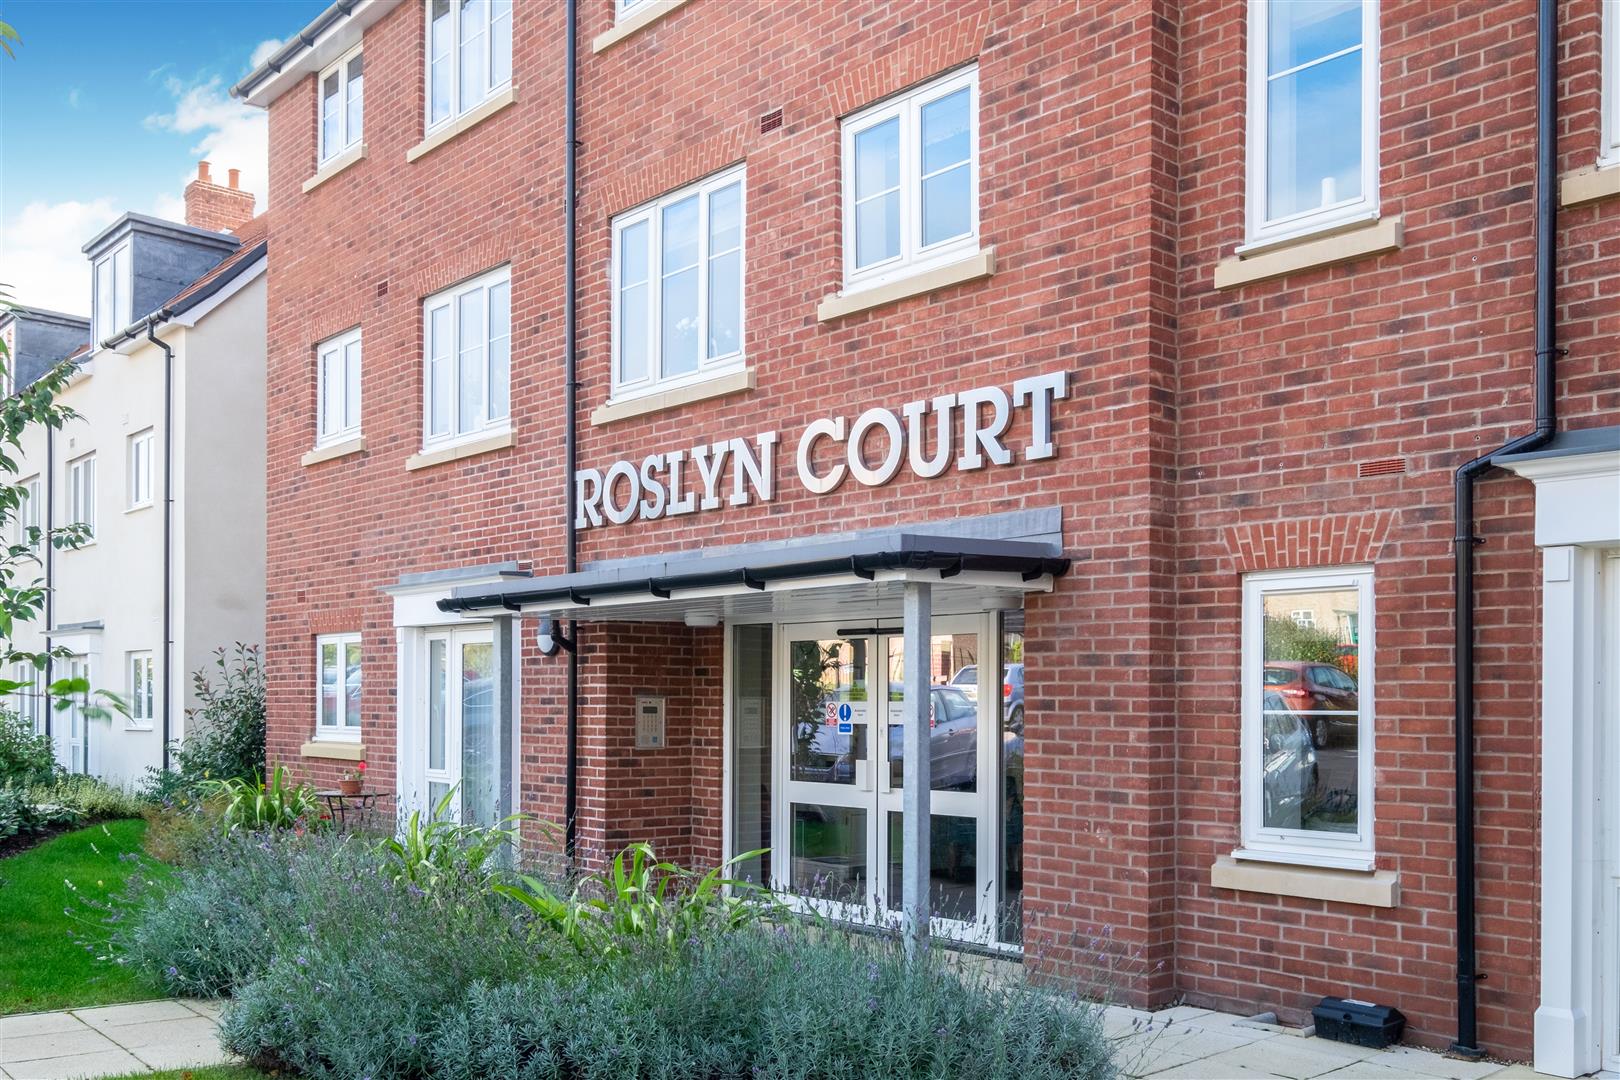 Roslyn Court, Lisle Lane, Ely, Cambridgeshire, CB7 4FA